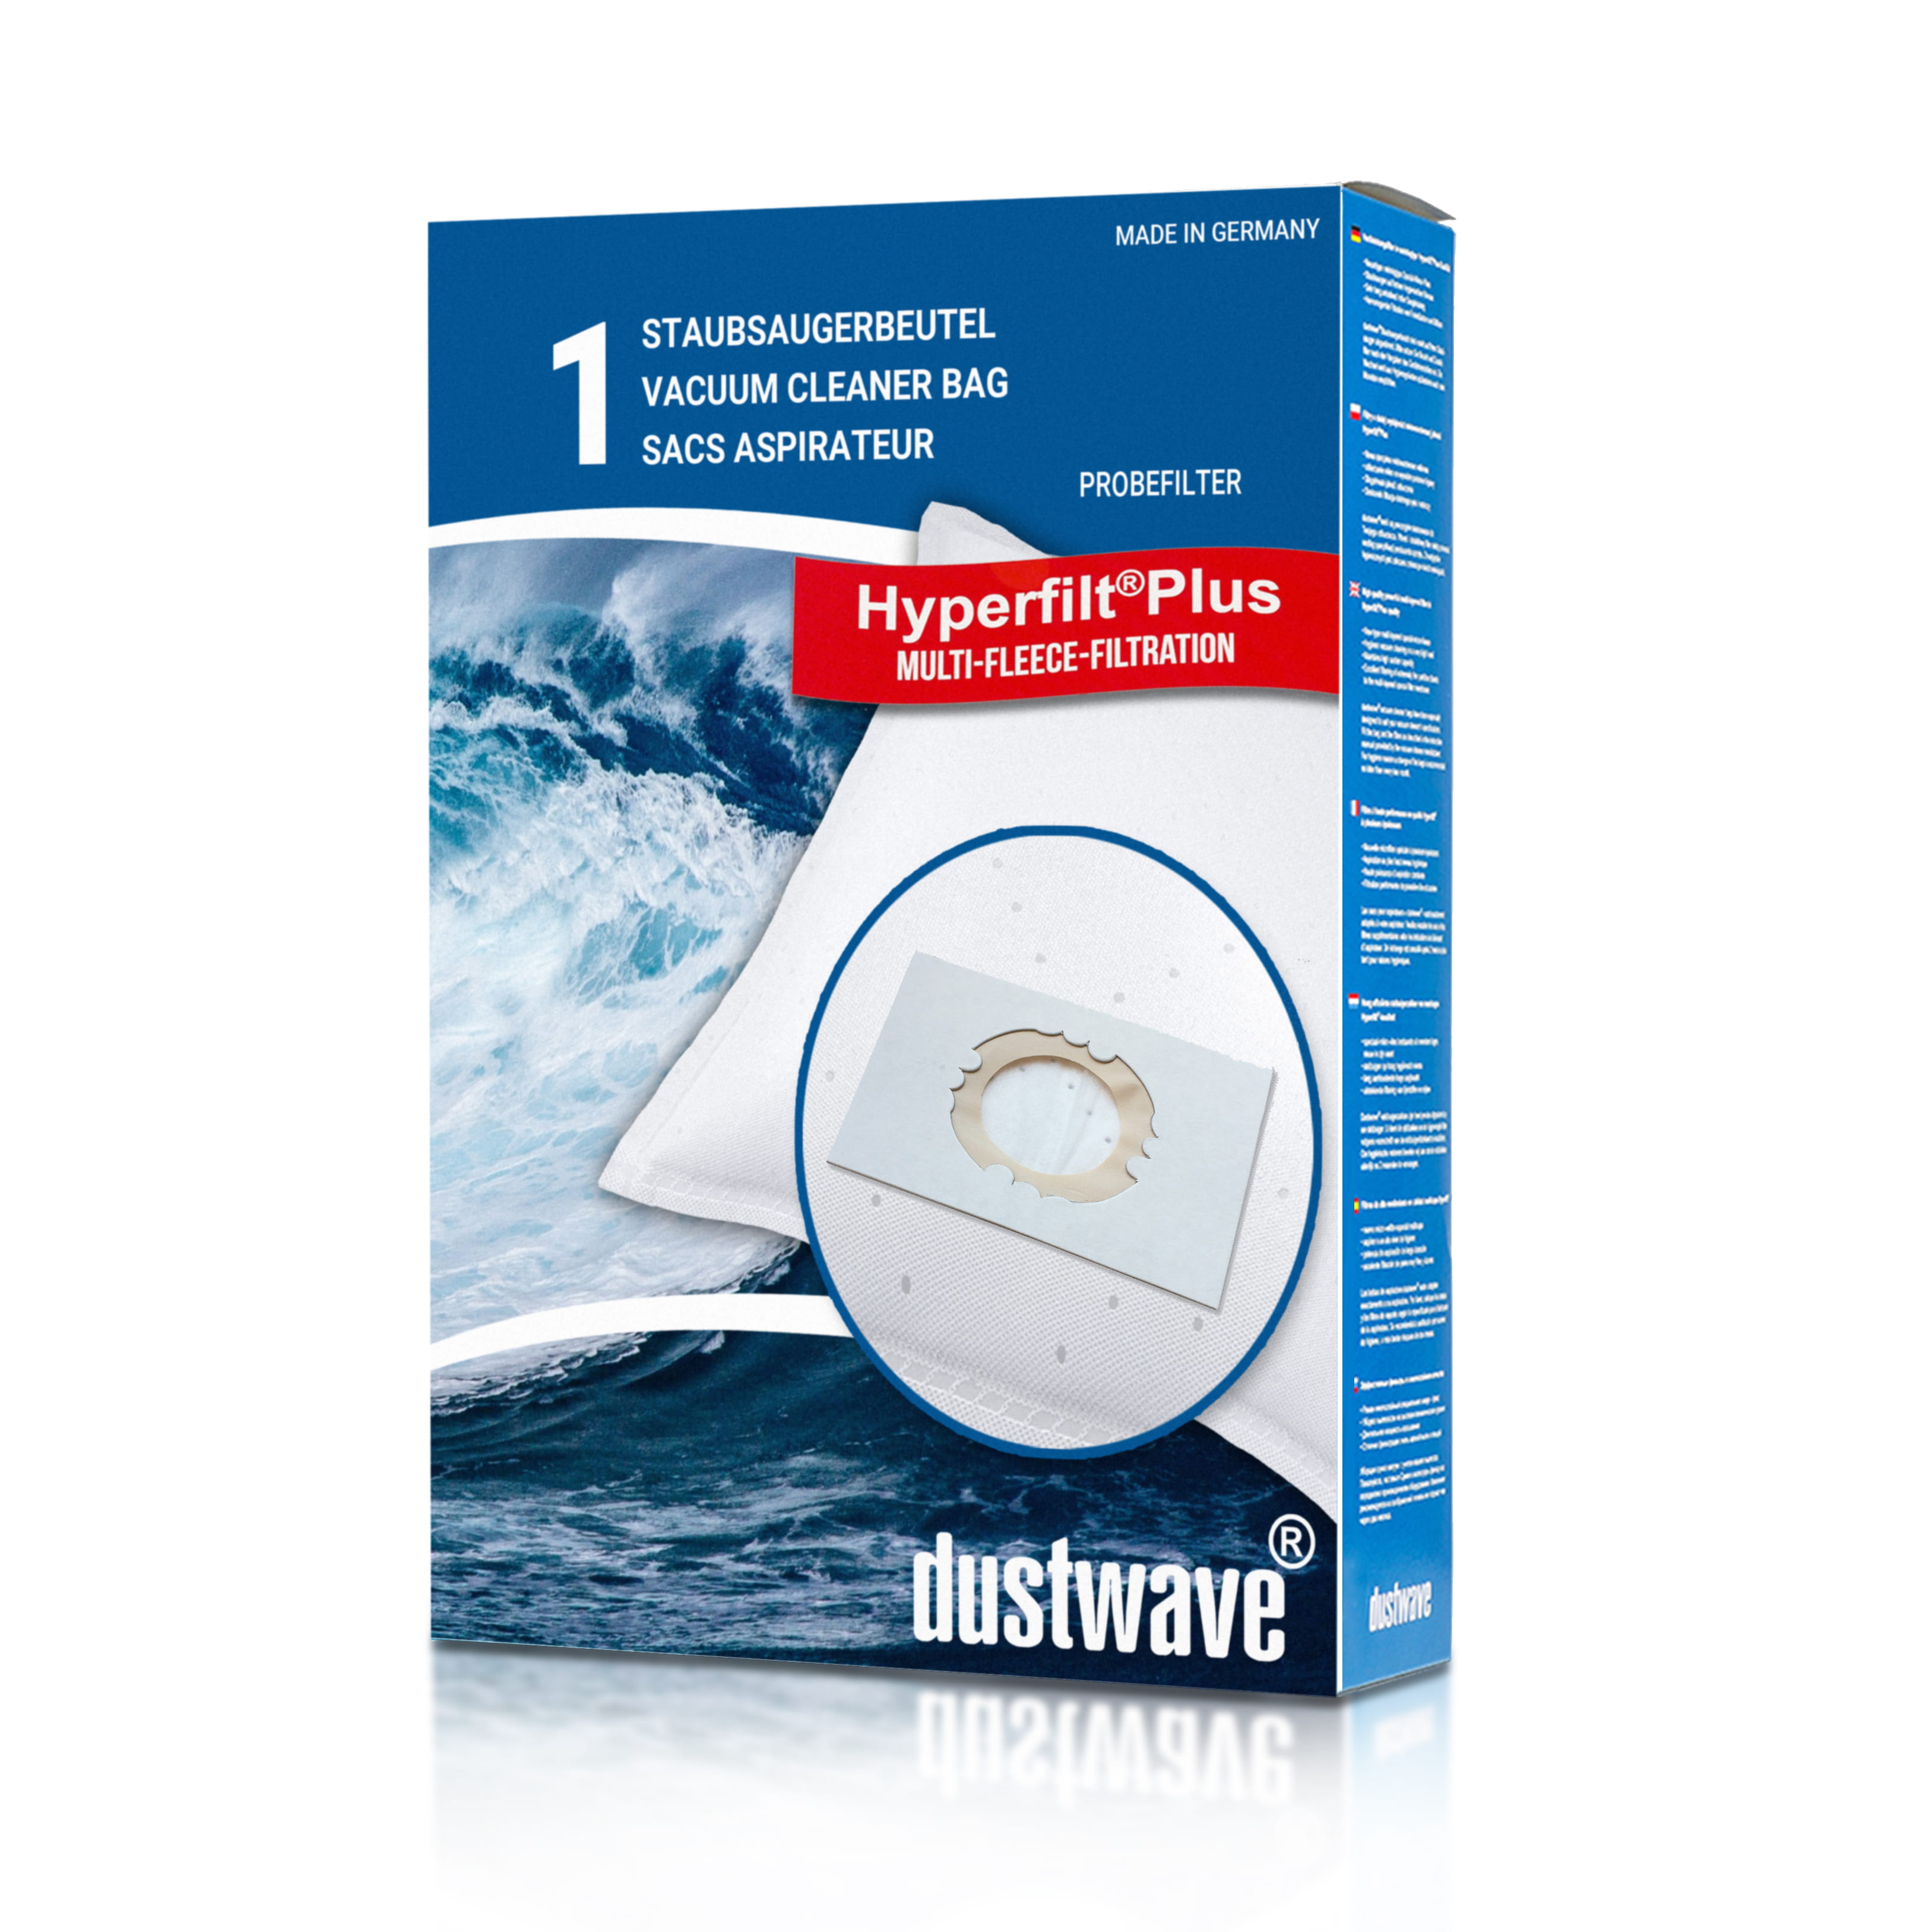 Dustwave® 1 Staubsaugerbeutel für Base BA 2585 - hocheffizient, mehrlagiges Mikrovlies mit Hygieneverschluss - Made in Germany